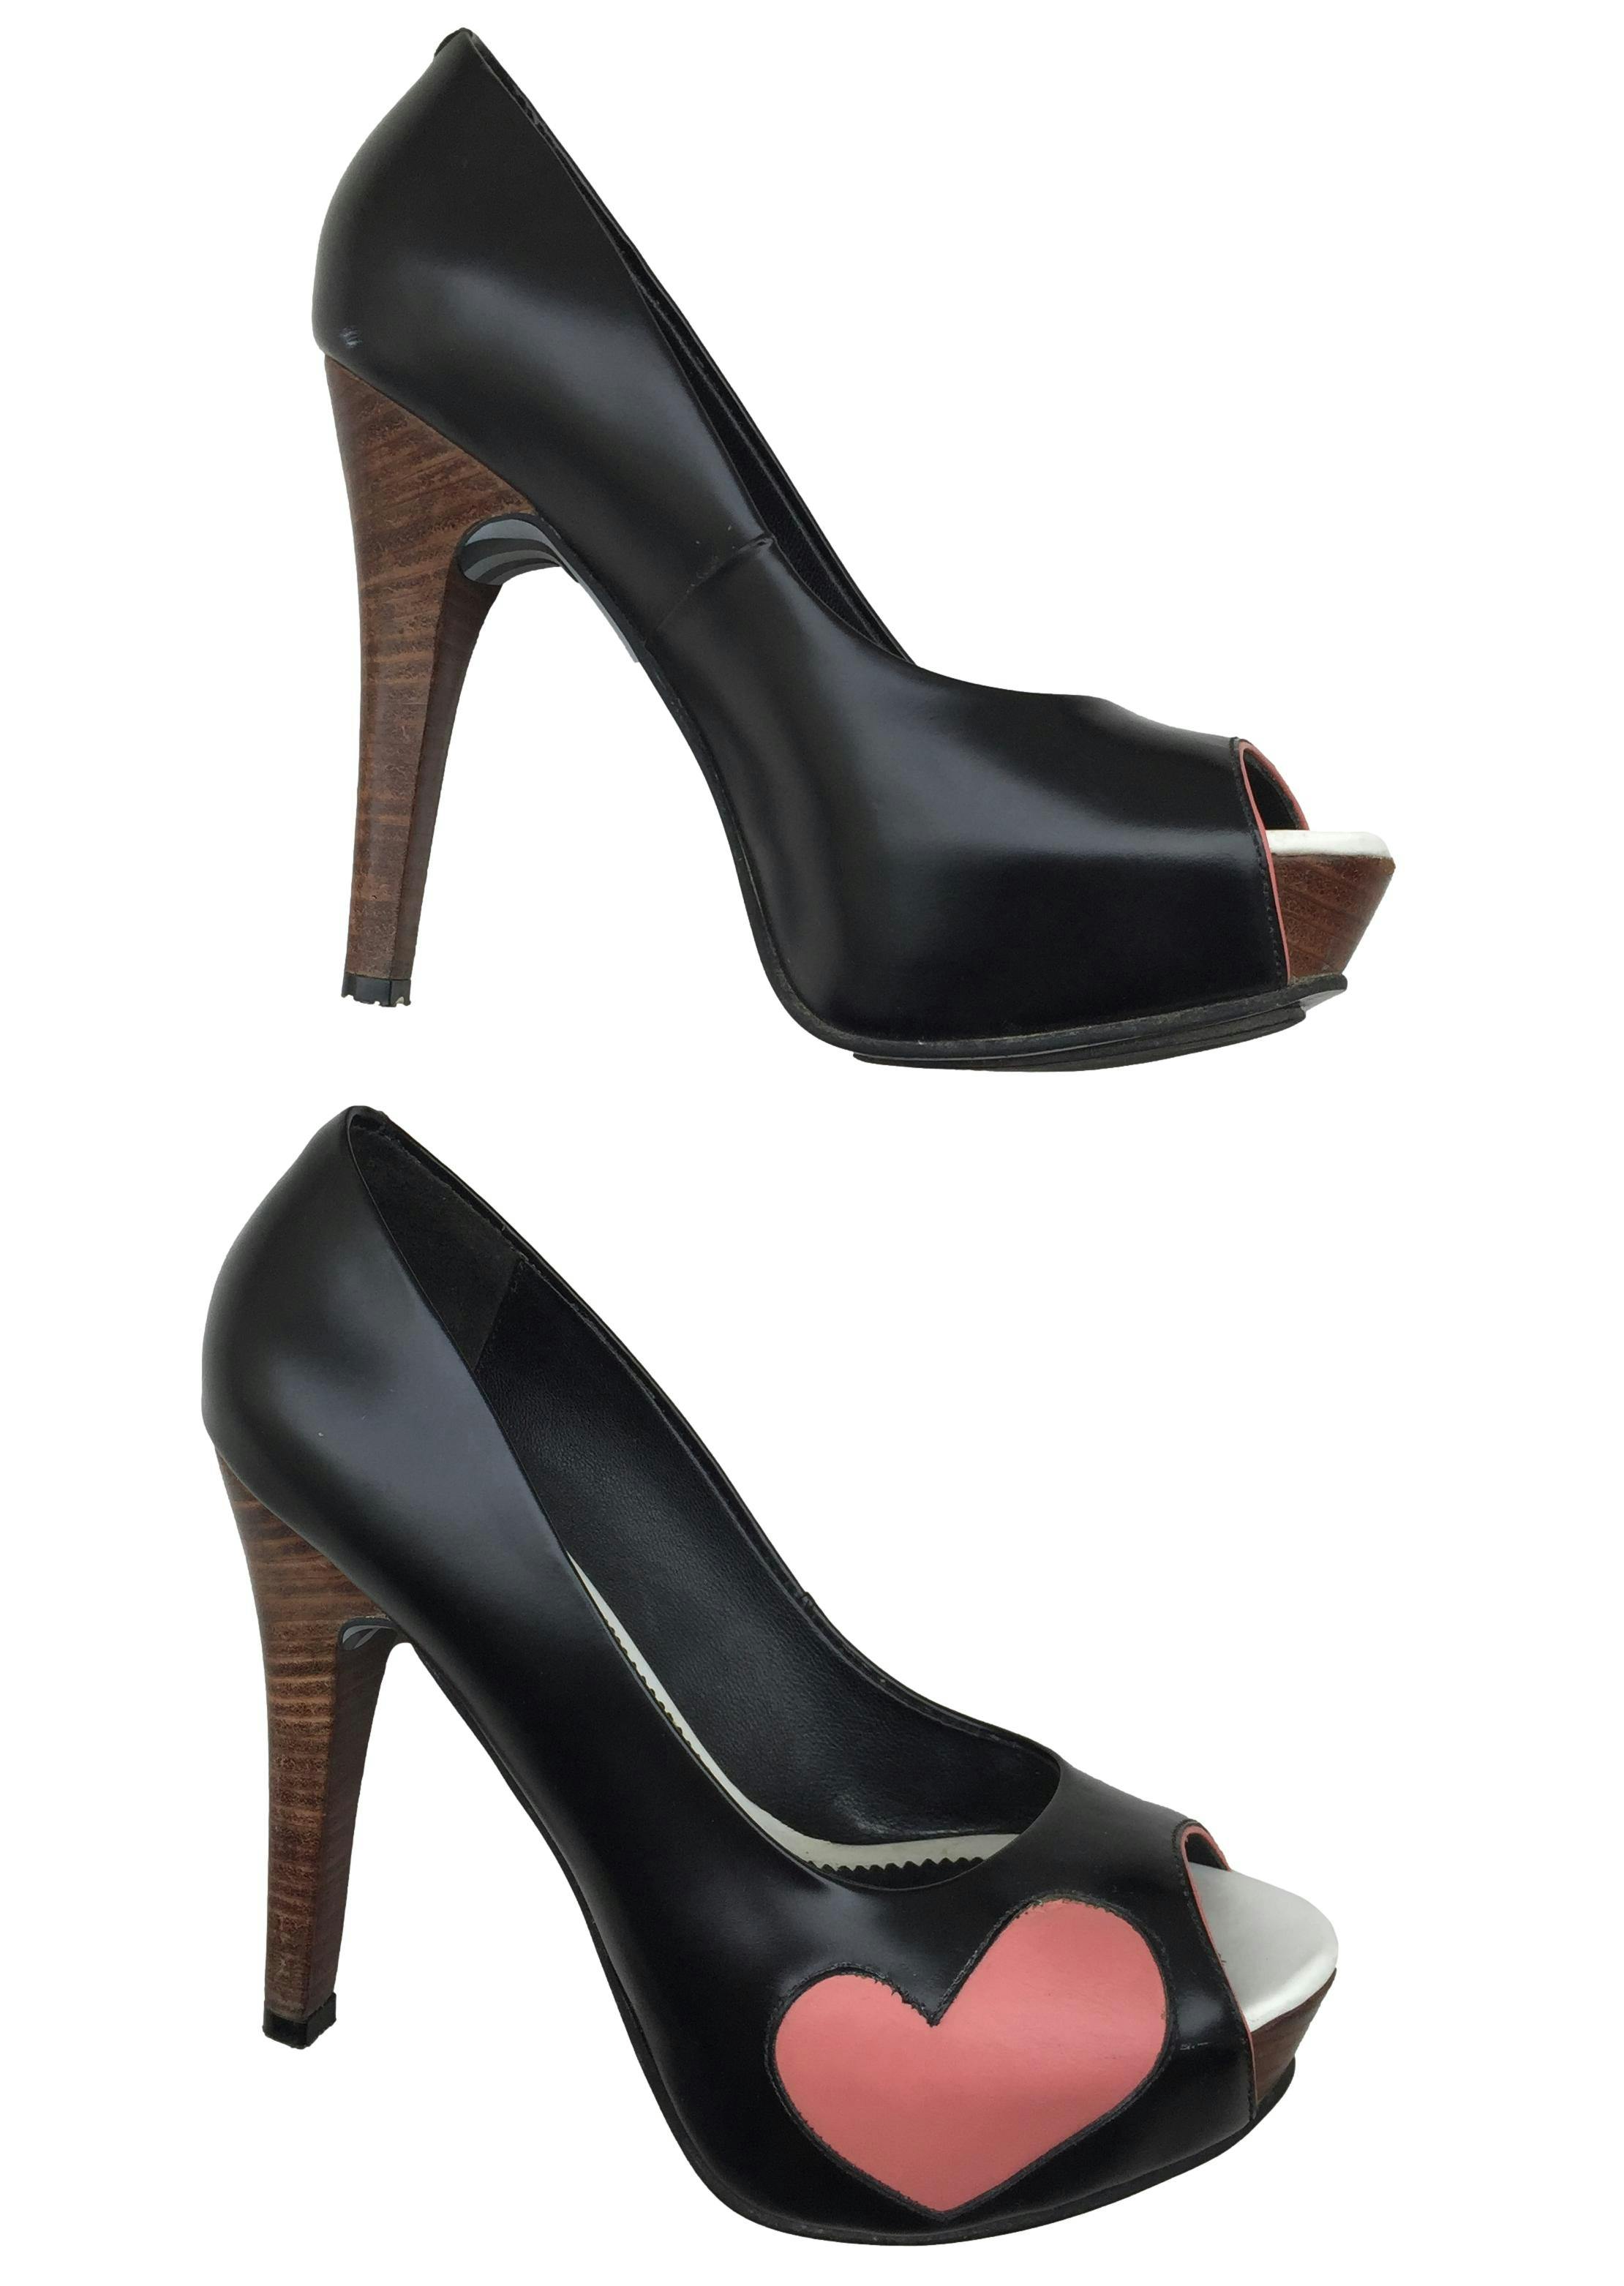 Zapatos Lala Love pee toe, de cuero negro con detalles corazón, taco 12cm plataforma 3cm. Estado 8.5/10